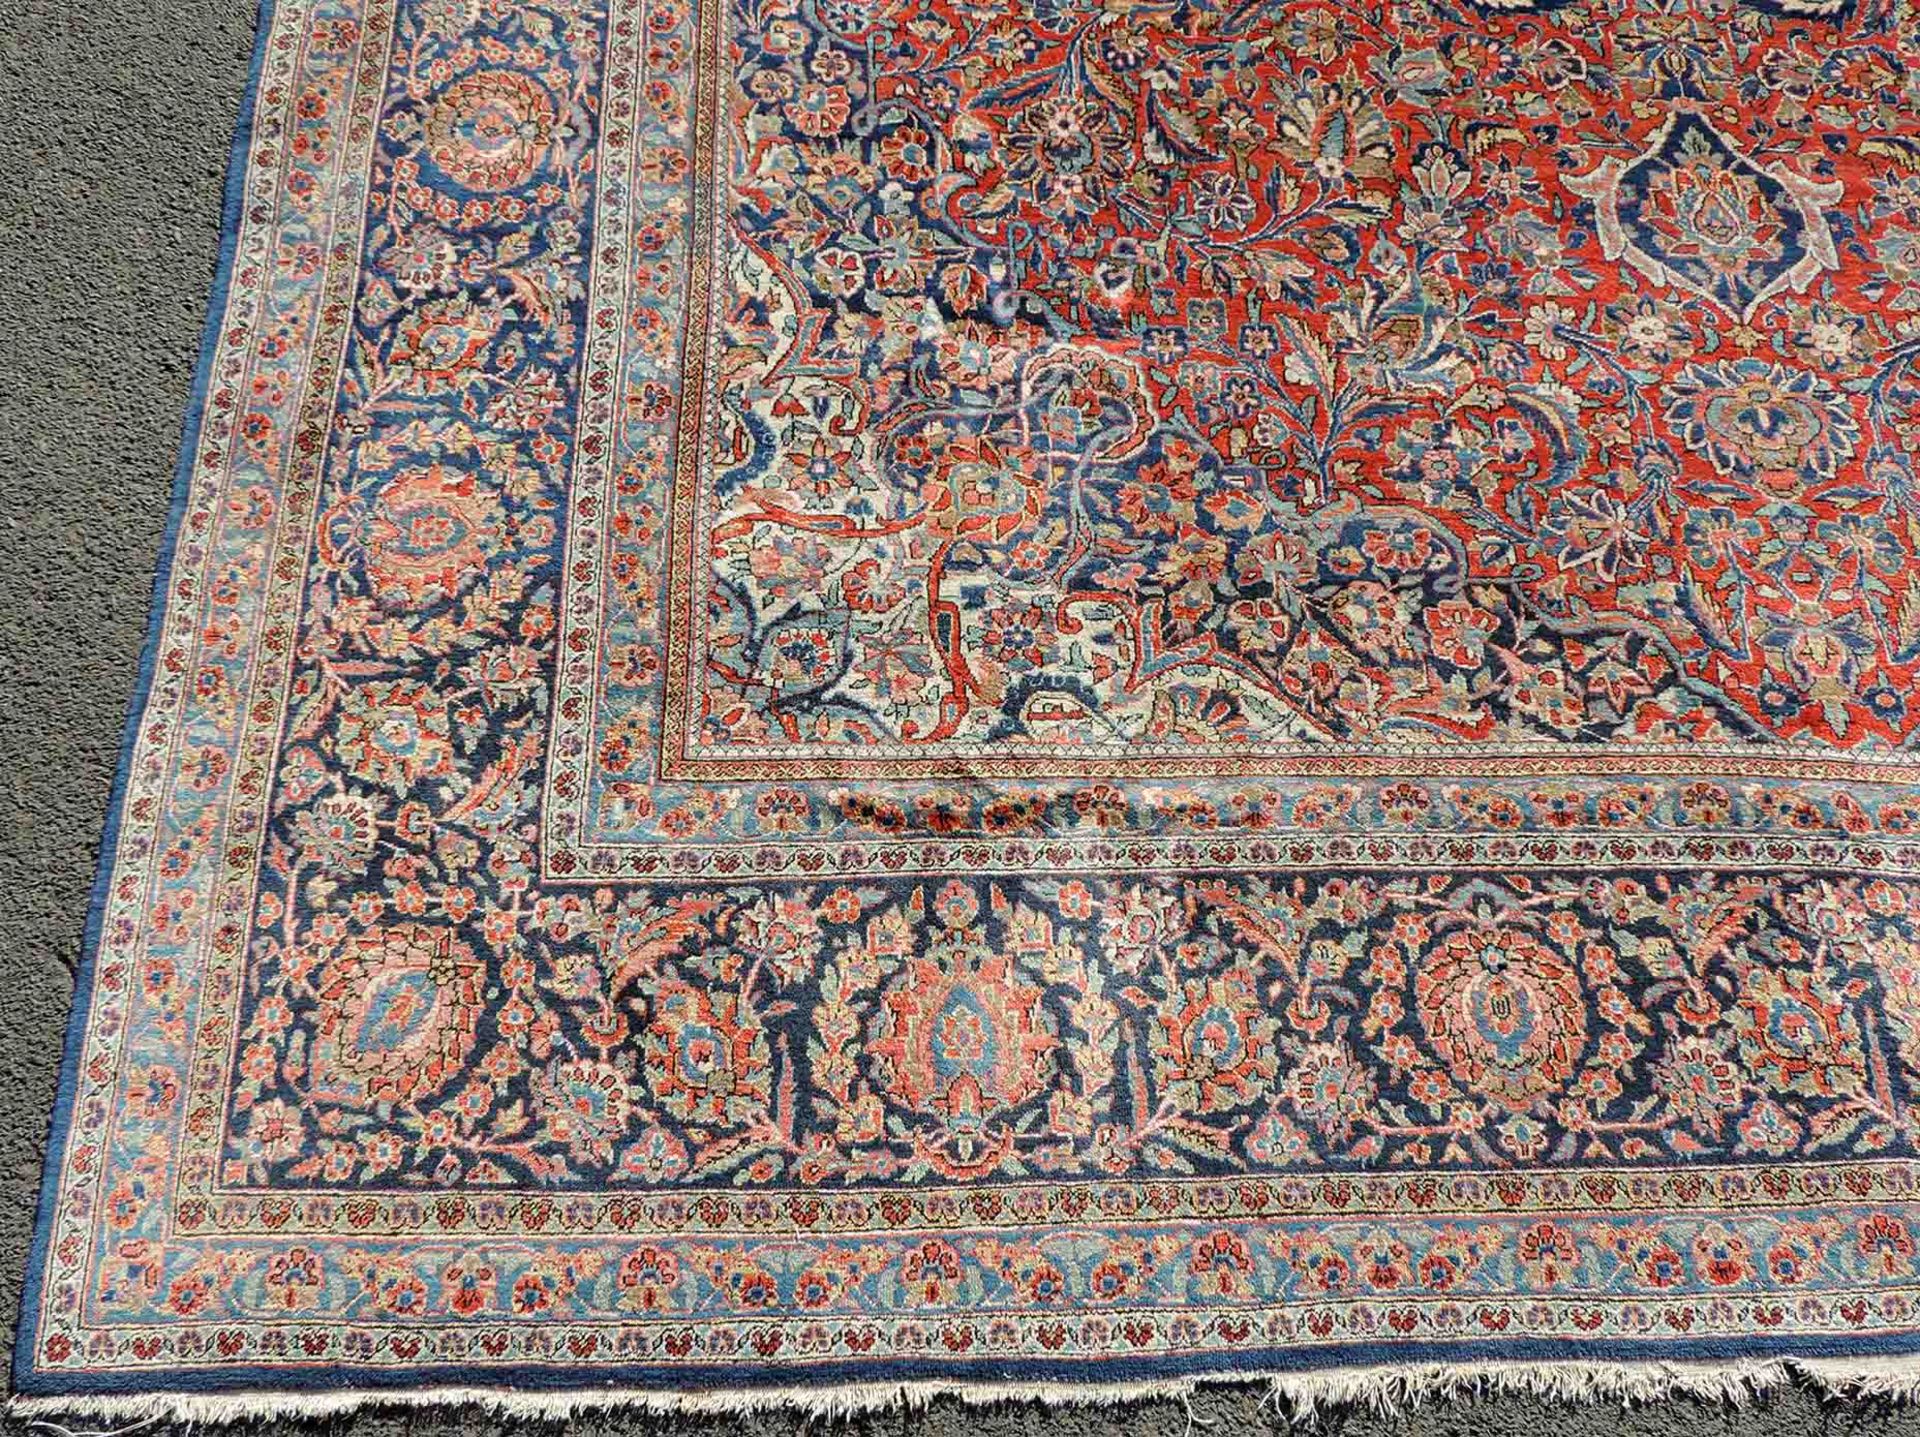 Keschan Teppich. Korkwolle, sehr fein. Iran, alt, um 1930. 412 cm x 288 cm. Handgeknüpft. - Bild 2 aus 9